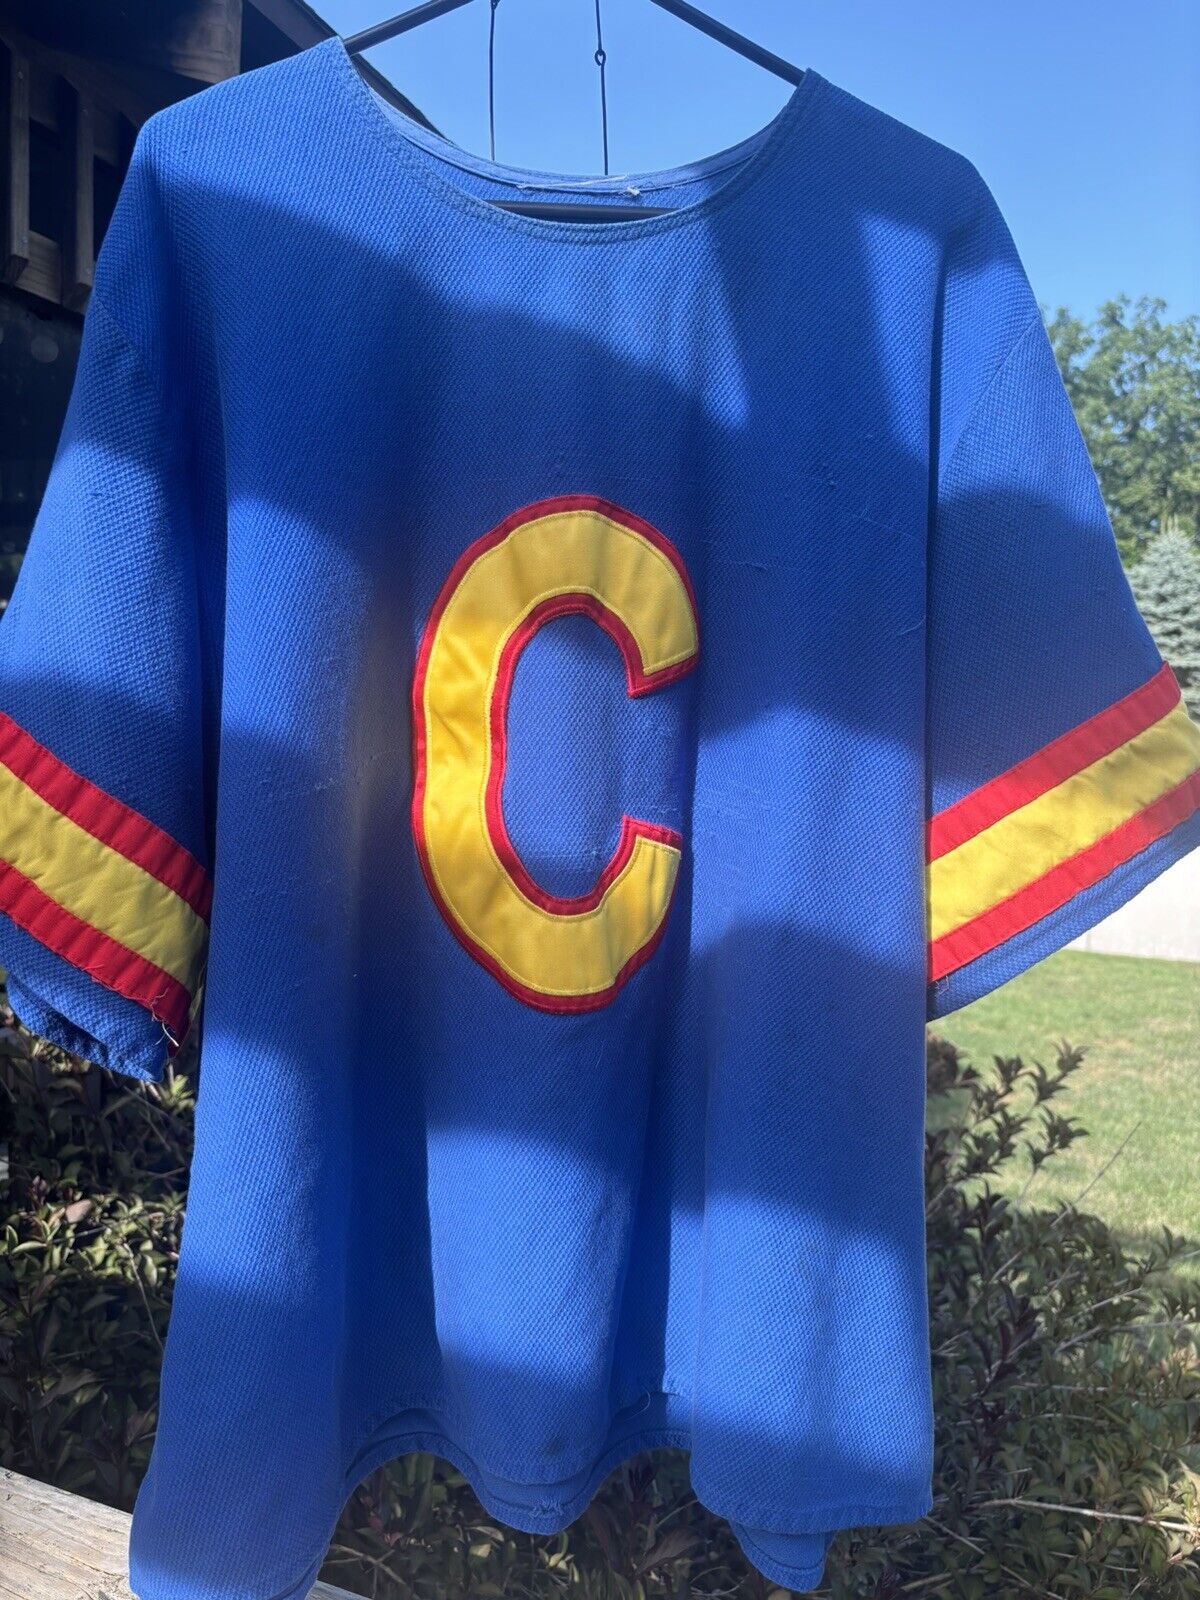 Chuck E Cheese Official C logo Shirt